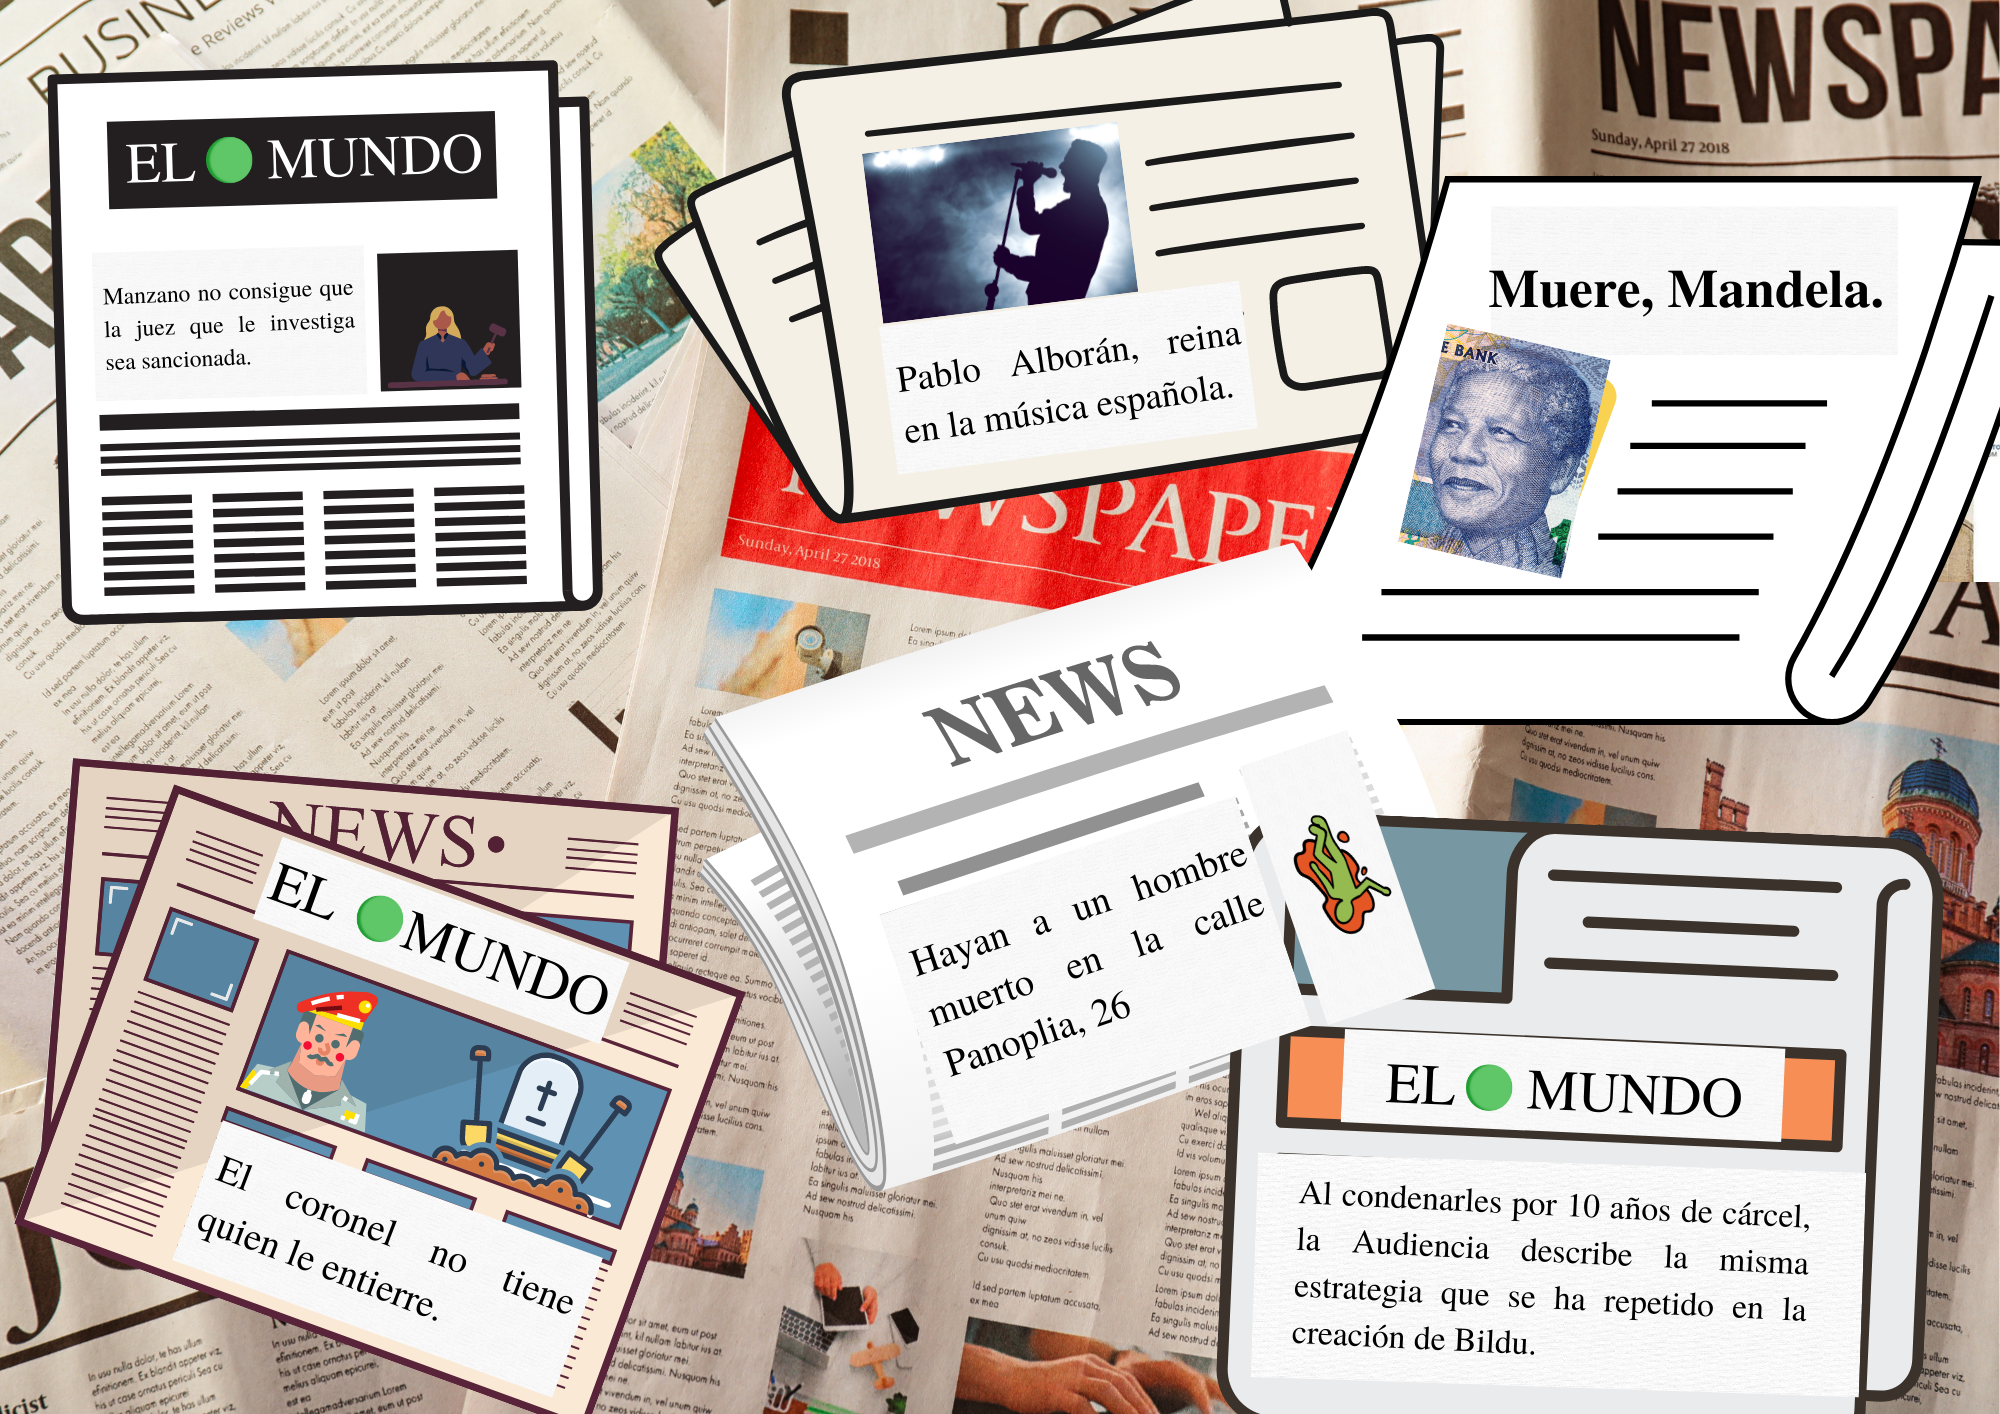 La imagen muestra recortes de prensa en diversas imágenes que simulan periódicos